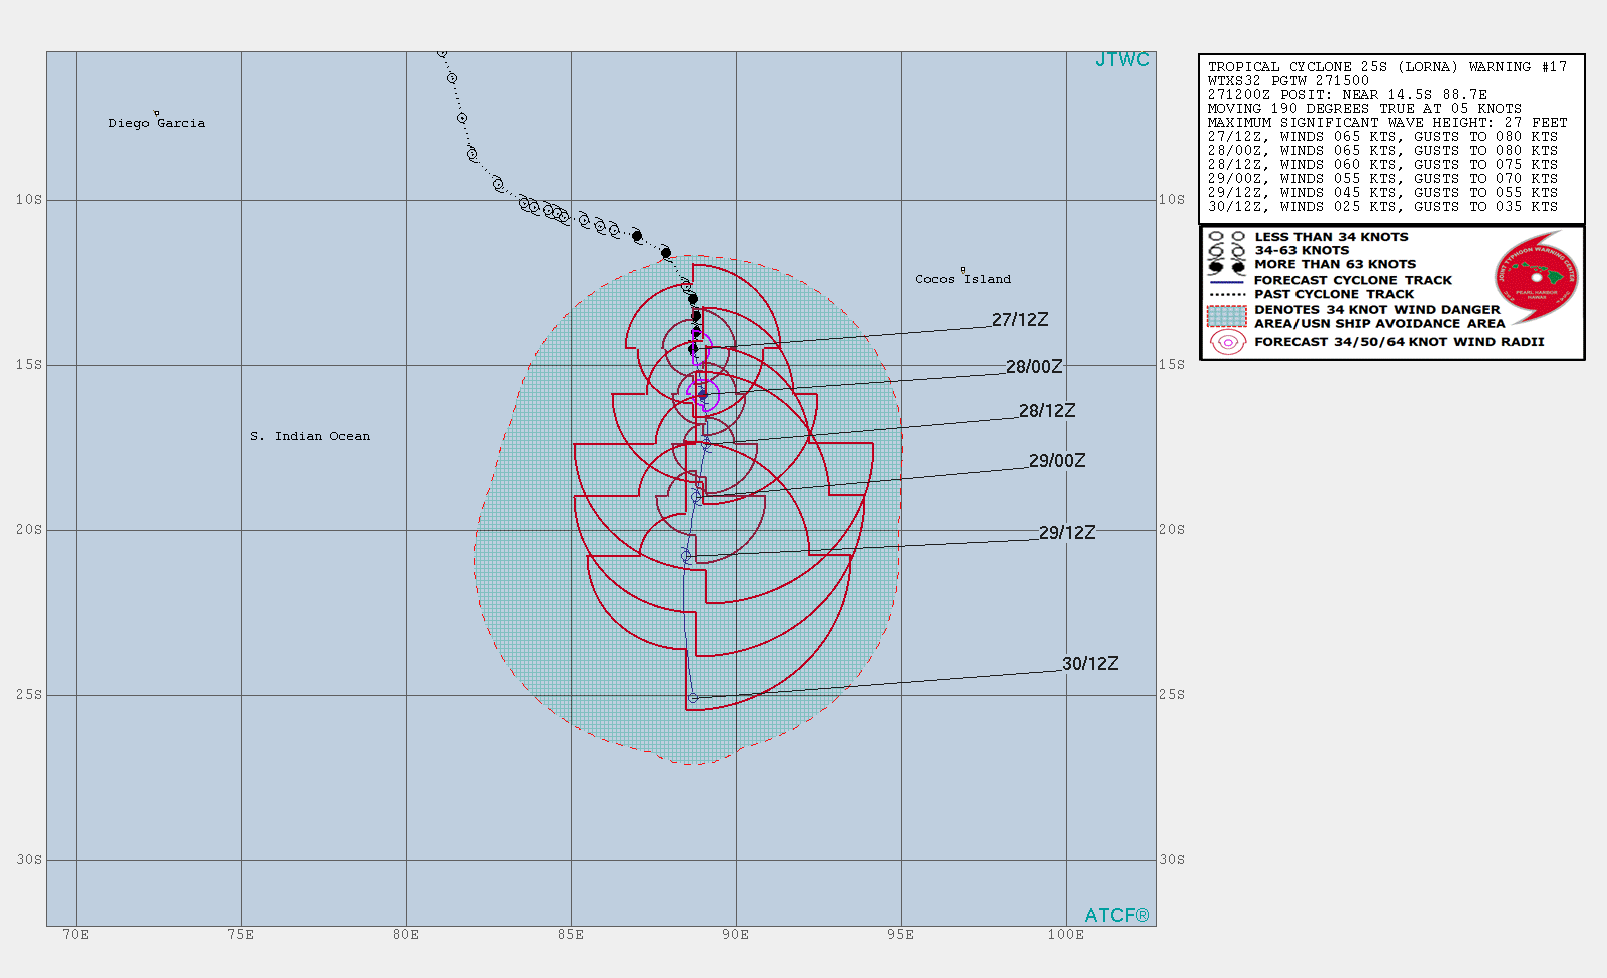 TC 25S WARNING 17/JTWC